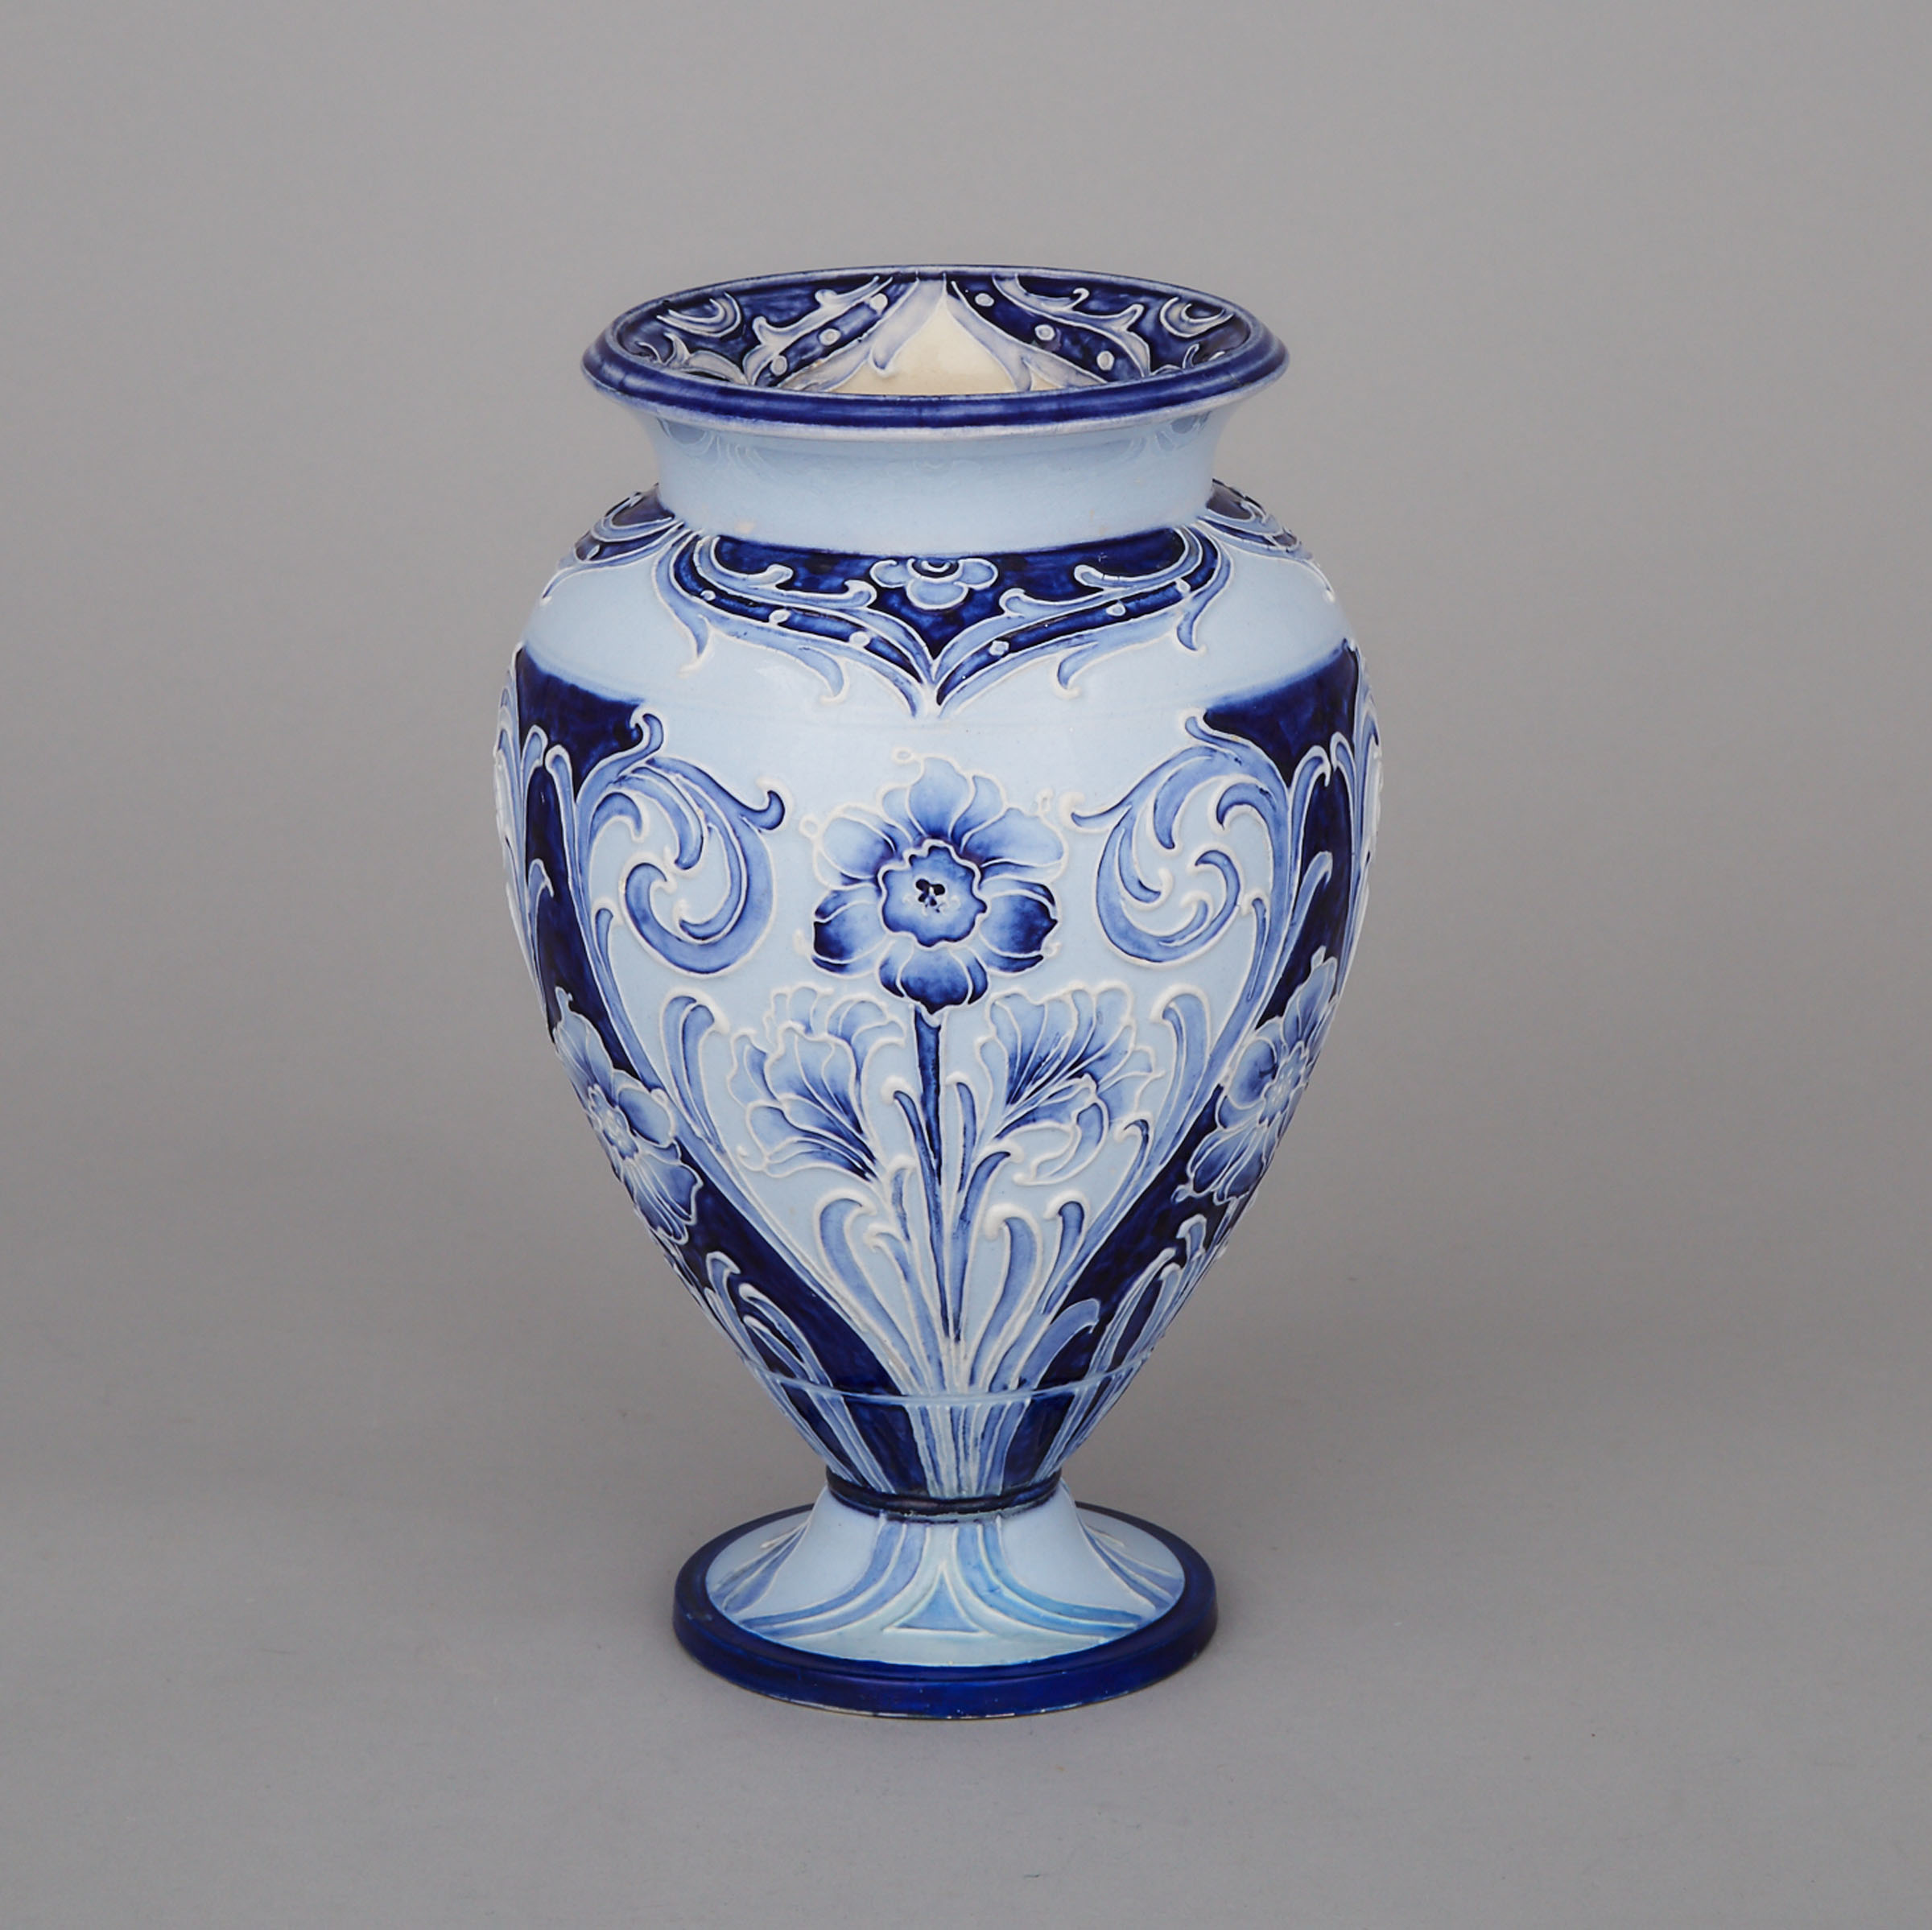 Macintyre Moorcroft Florian Ware Vase, c.1900